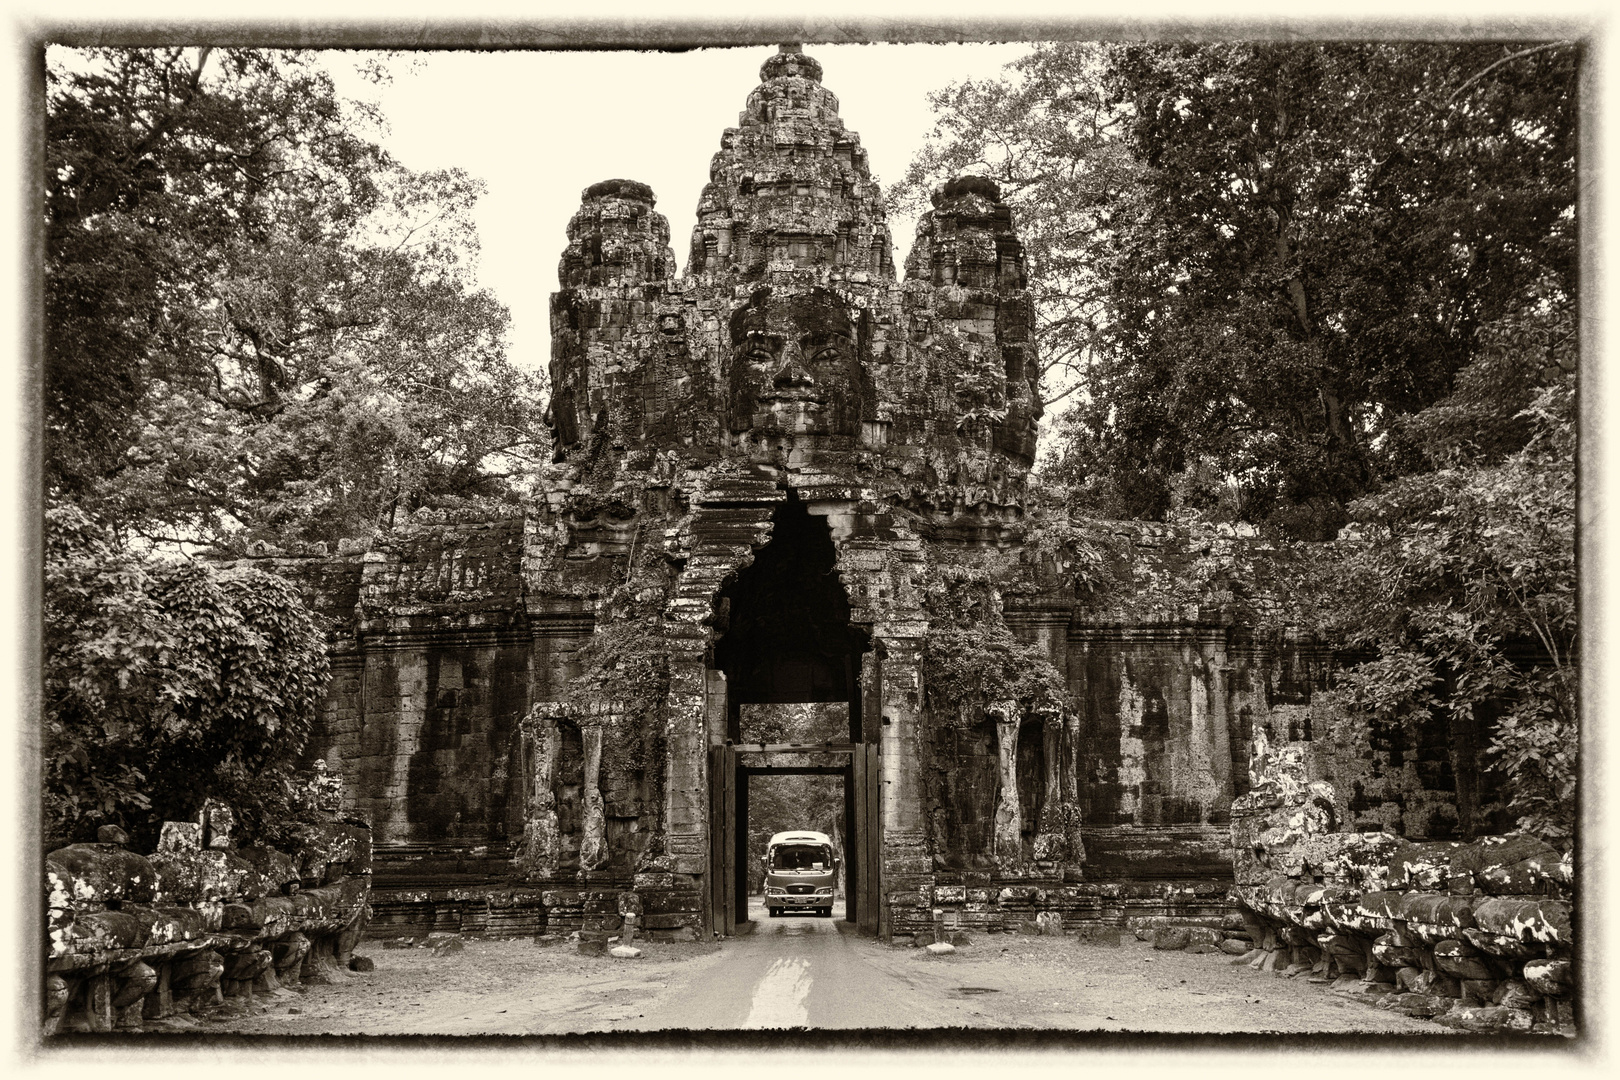 Streets of Angkor